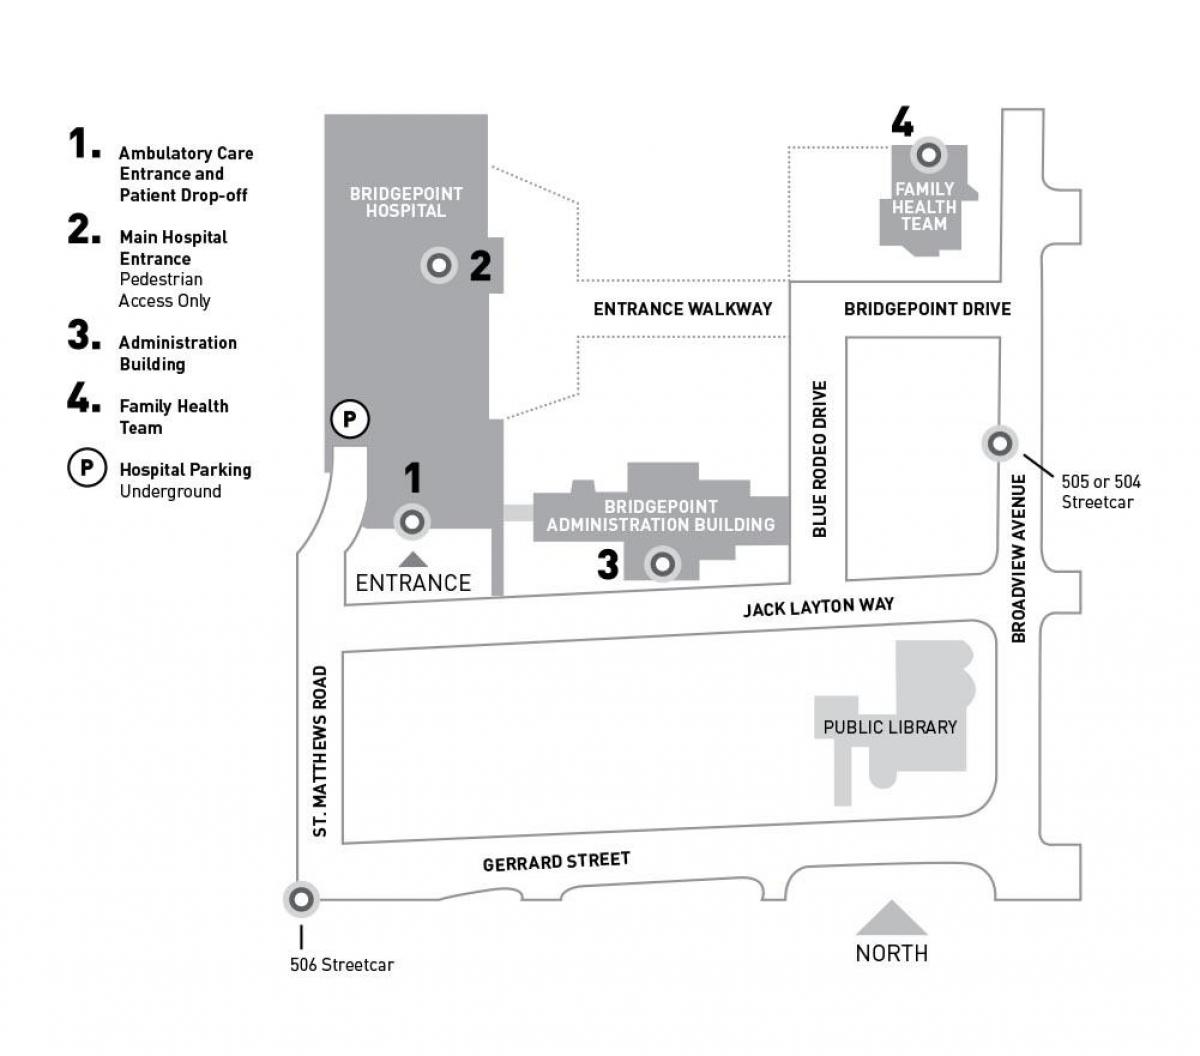 Harta e Spitali Sinai Sistemit Shëndetësor-Bridgepoint Toronto